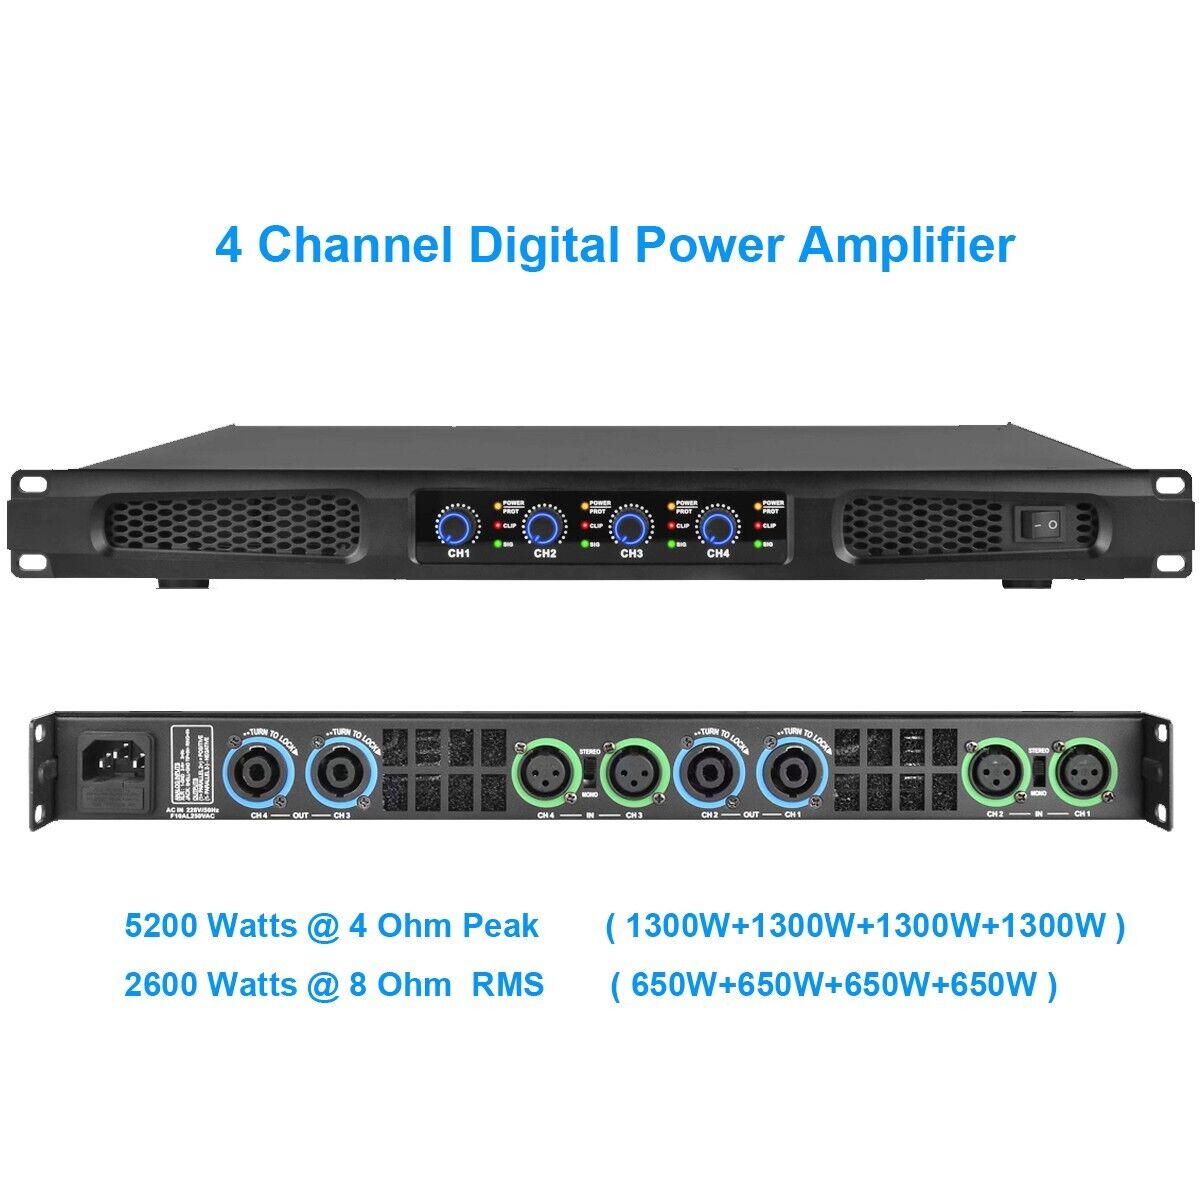 High-tech 5200w 4 Channel Class D Digital Power Amplifier 5200 Watts Peak Output